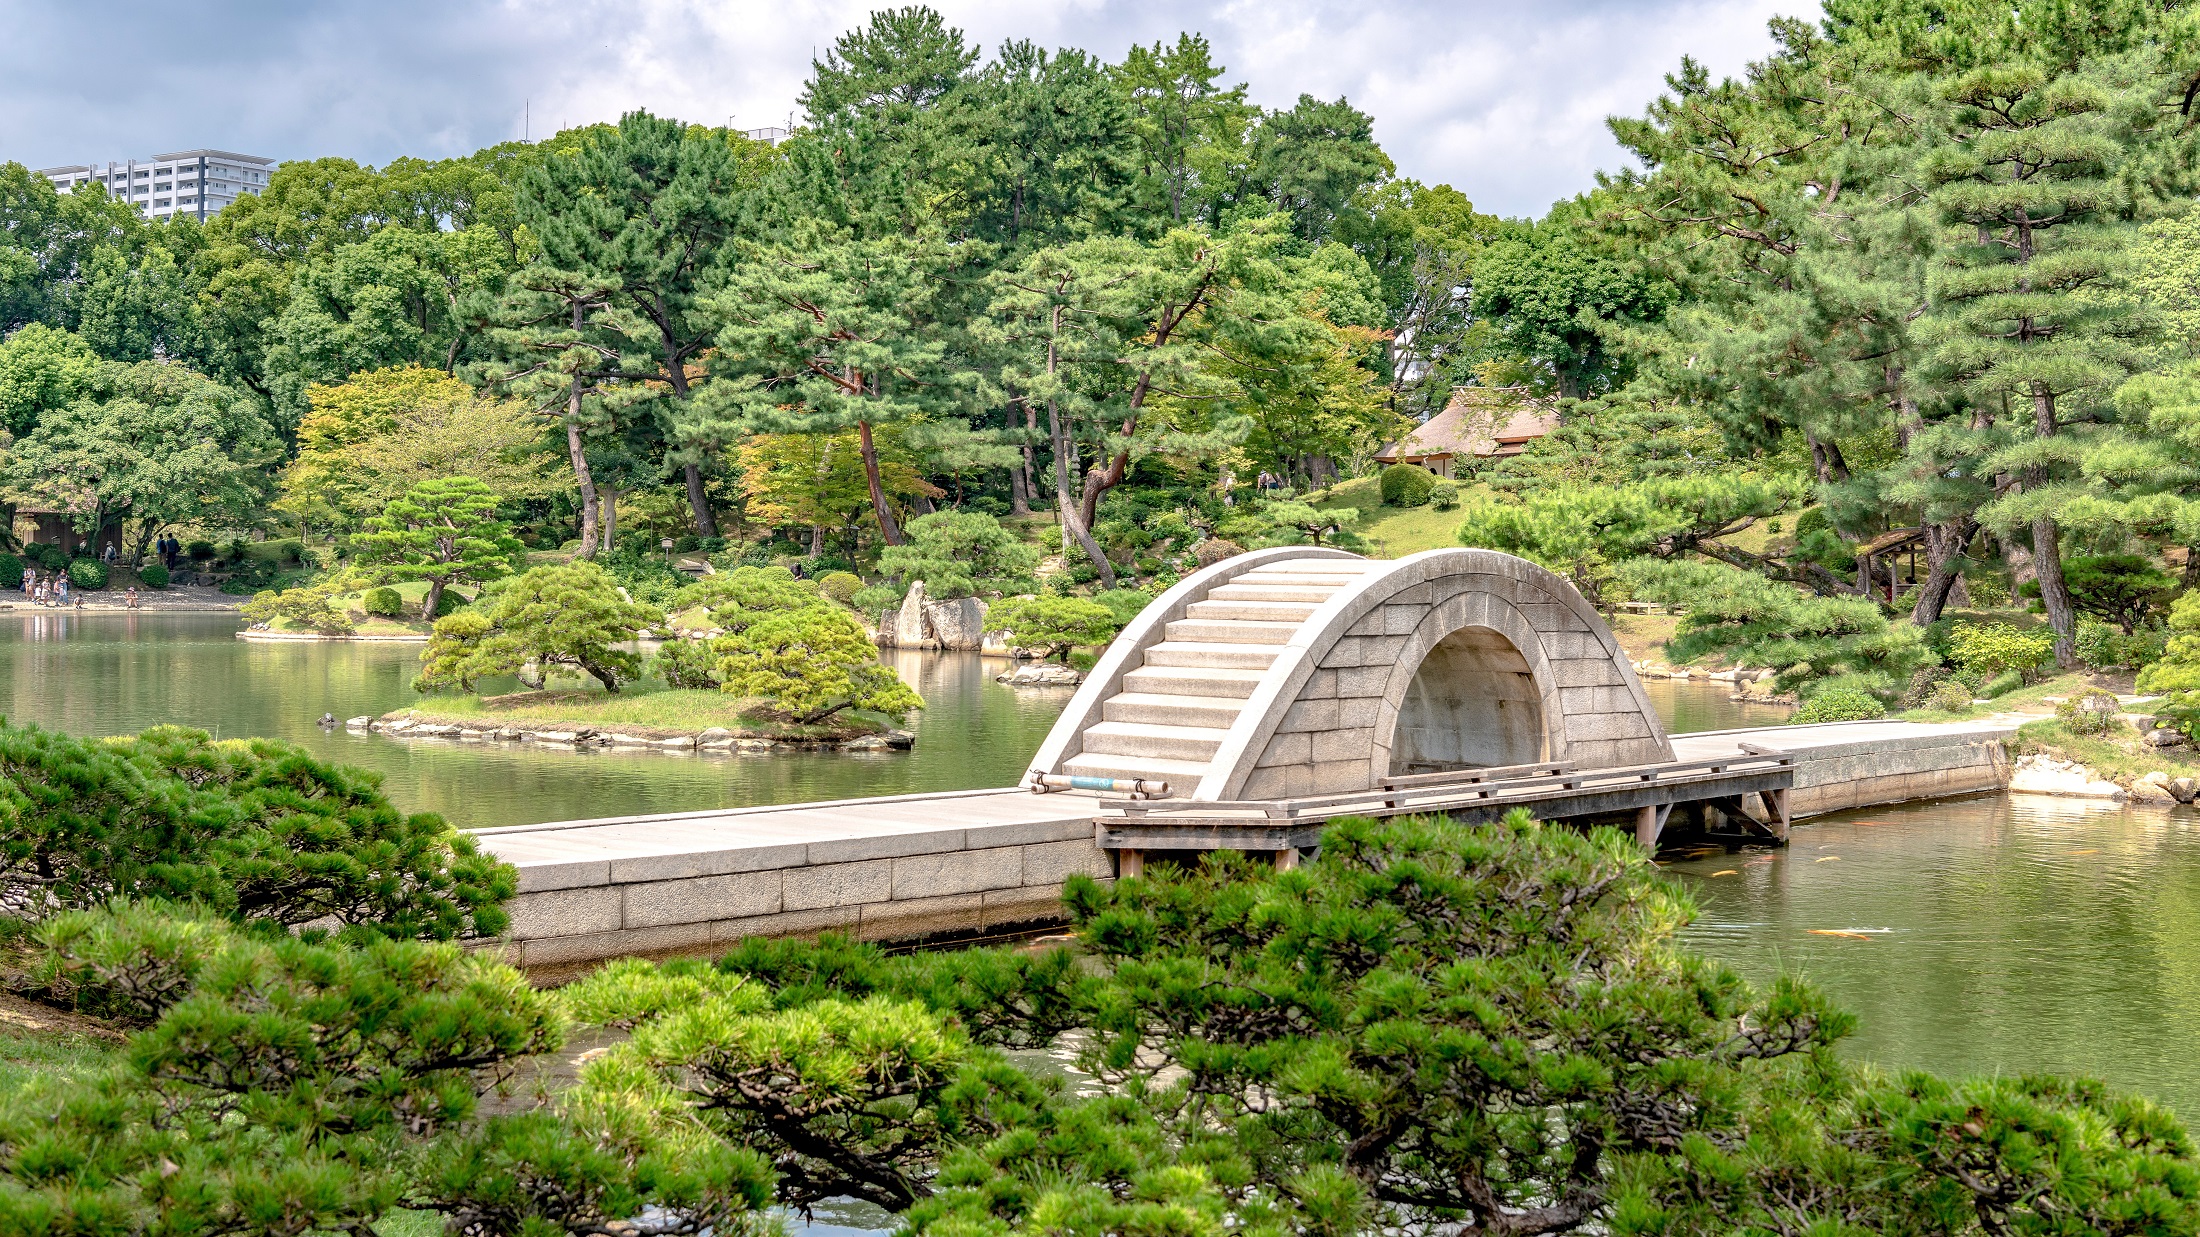 広島藩初代藩主 浅野長晟（ながあきら）が別邸の庭園として築成した大名庭園「縮景園」。